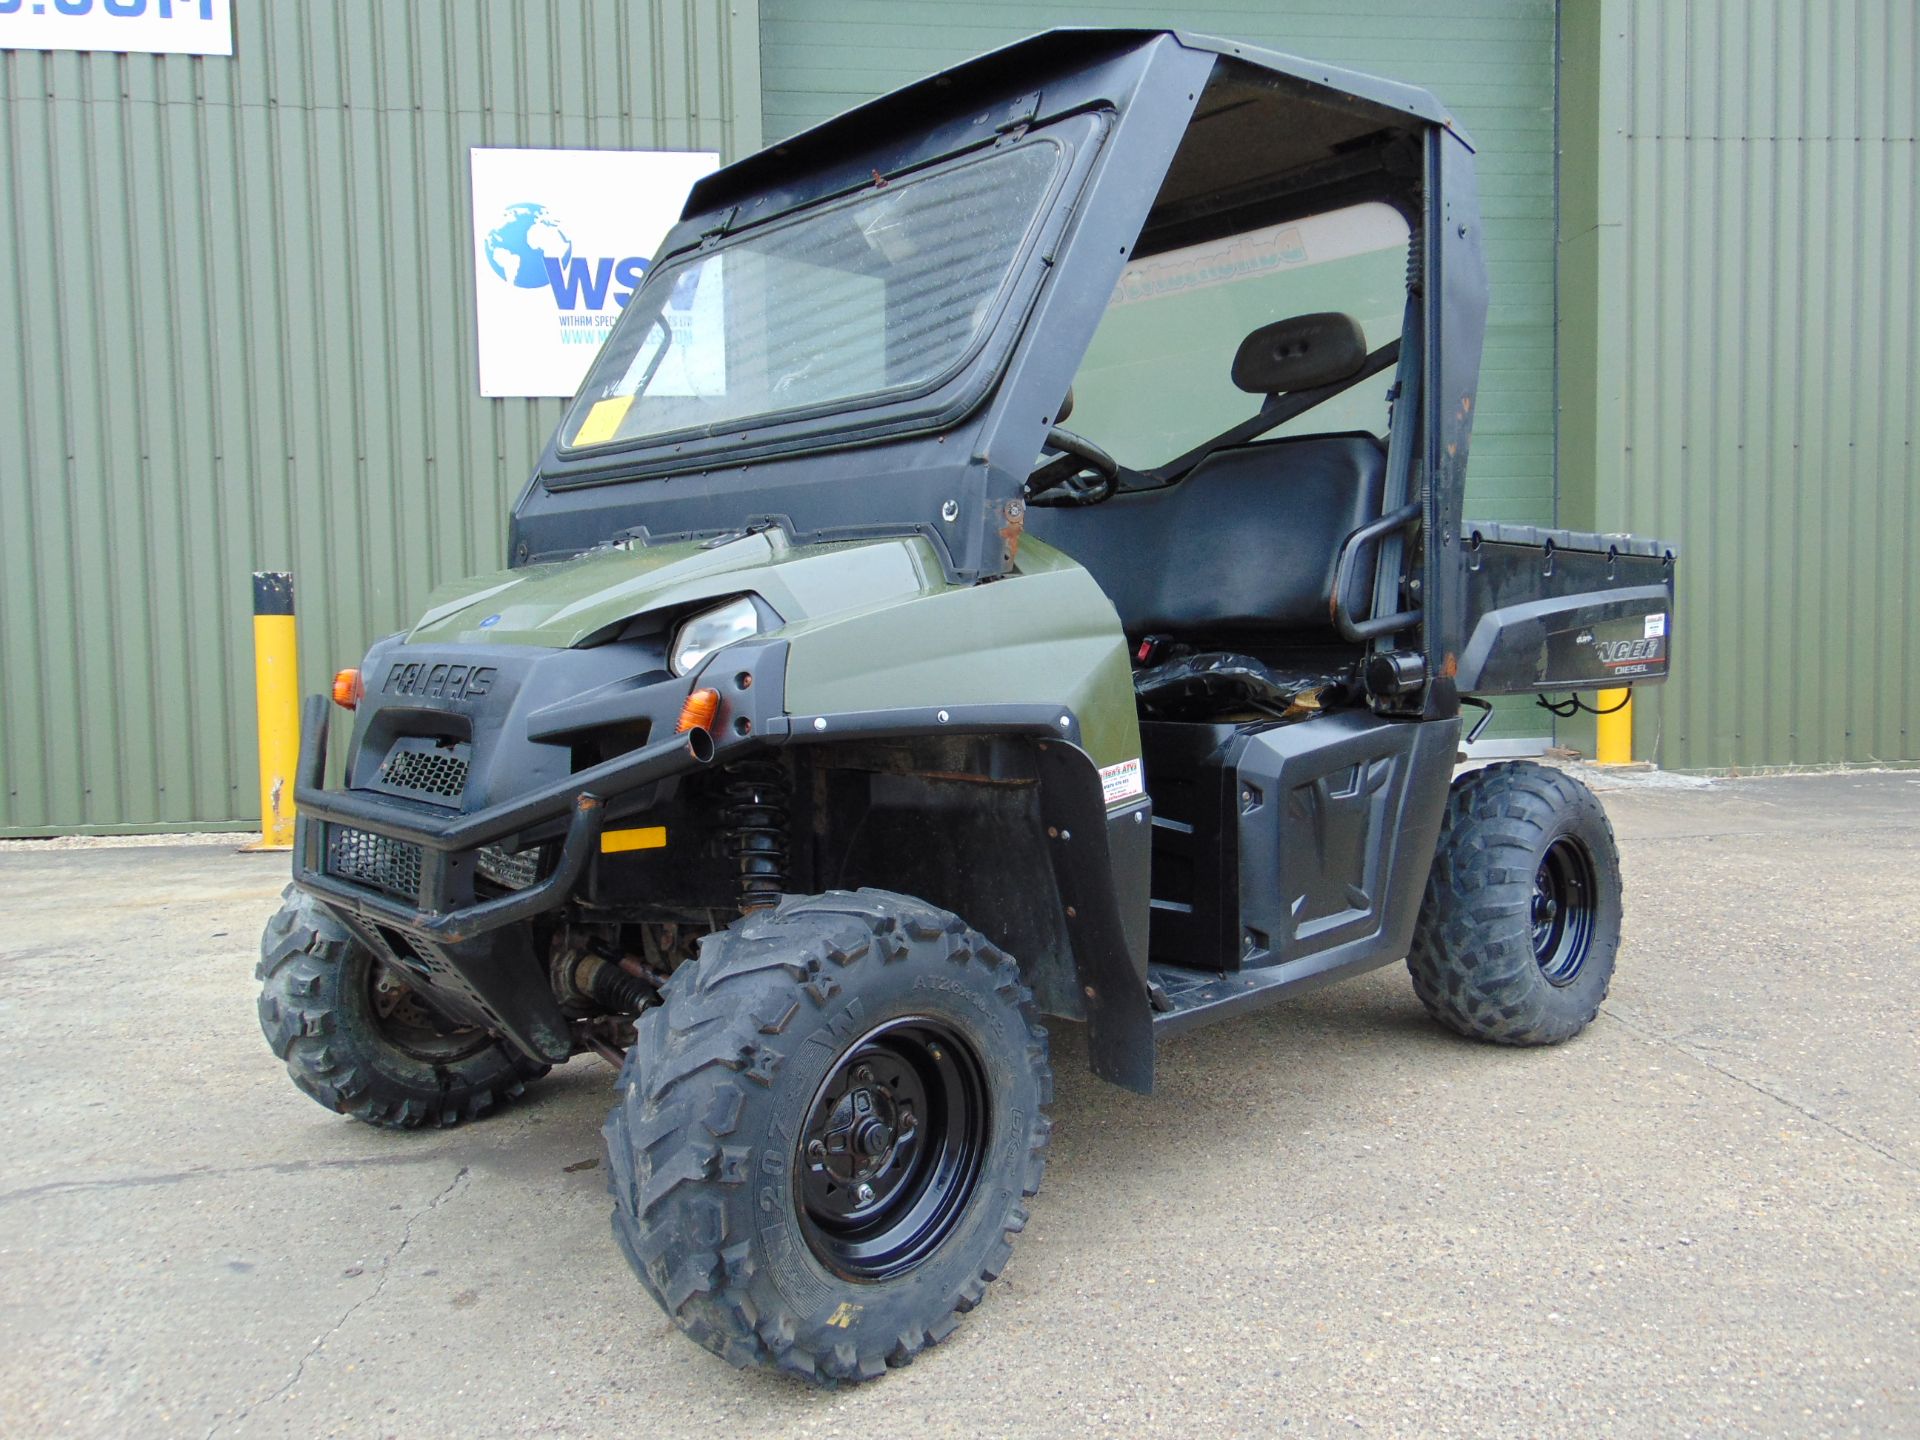 2013 Polaris Ranger 4WD ATV